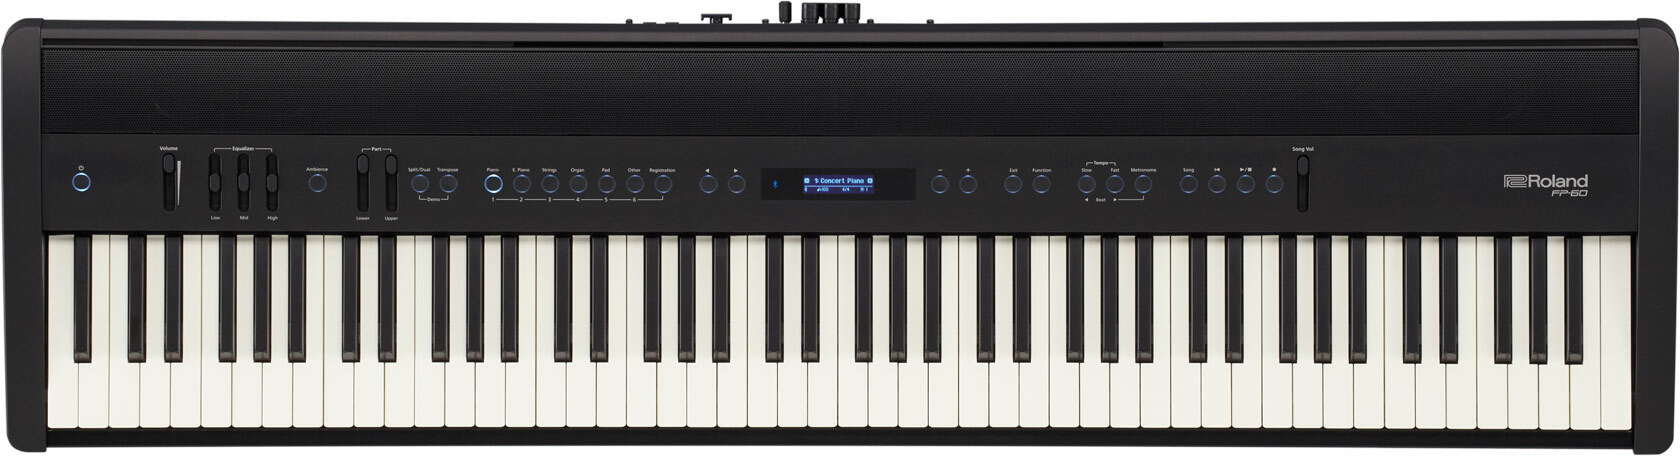 Roland Fp-60 - Noir - Piano digital portatil - Main picture